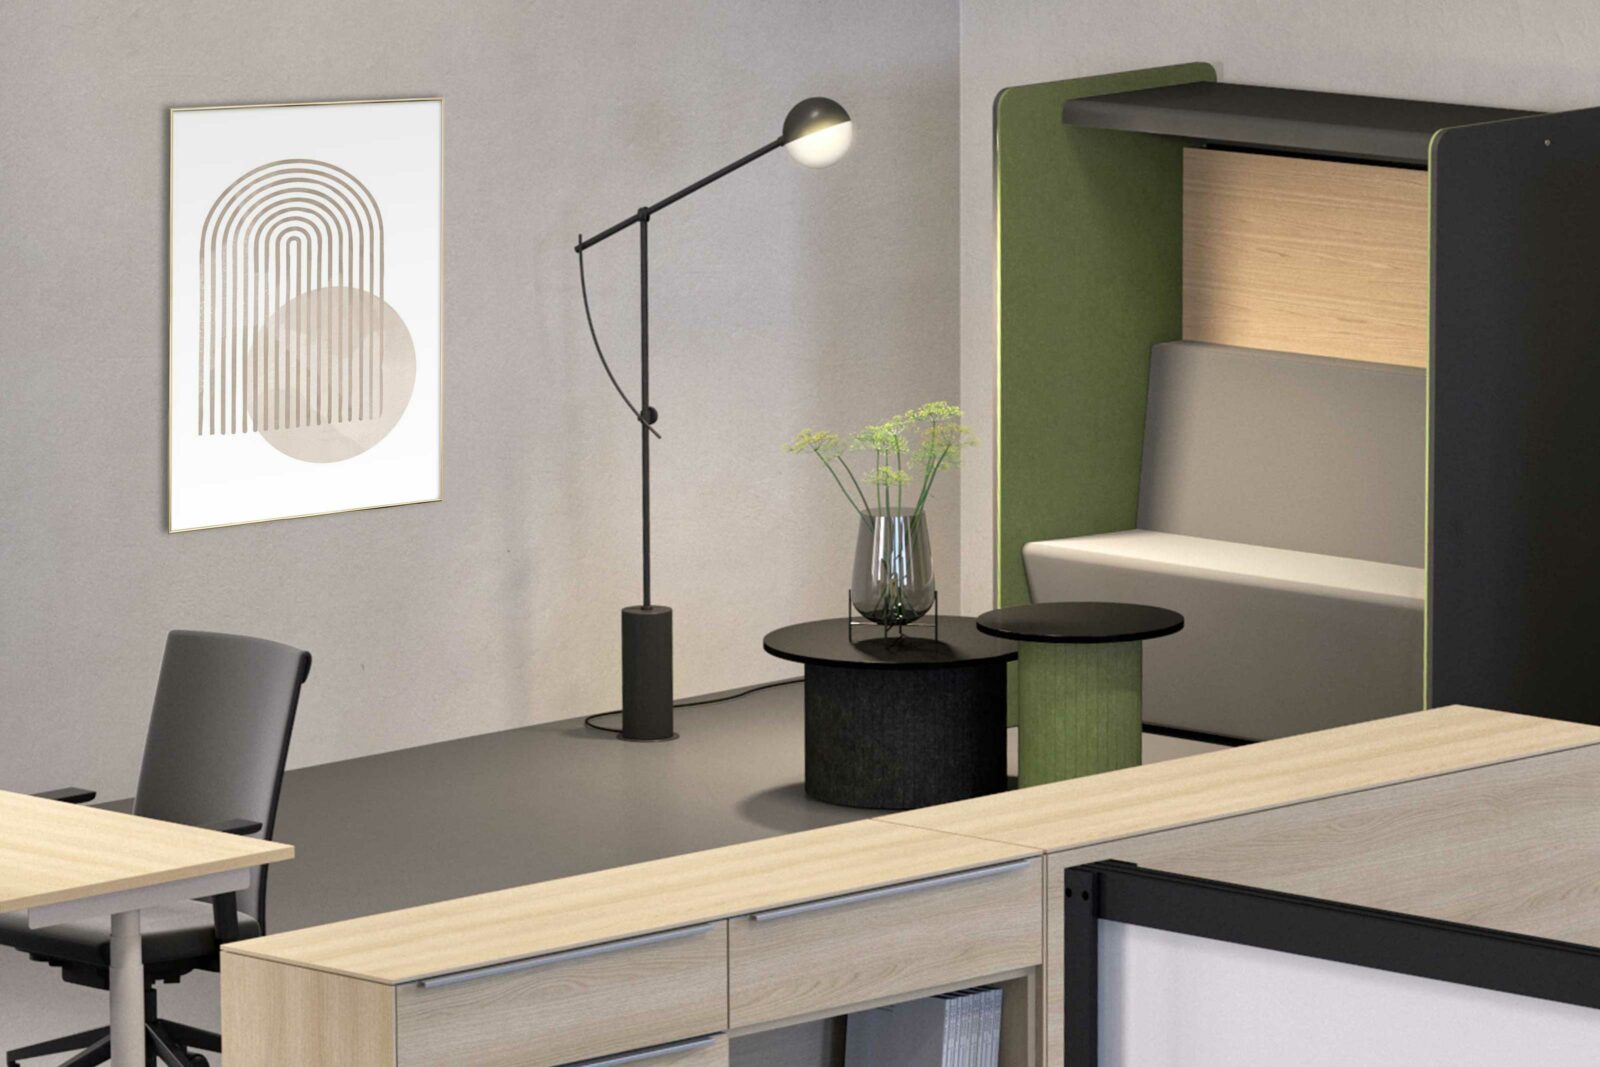 Bildausschnitt zeigt eine Bürosezen mit Blick auf einen Lounge Bereich mit zwei Beistelltischen und einem Raumzonierungsmodul mit Sitzbank.